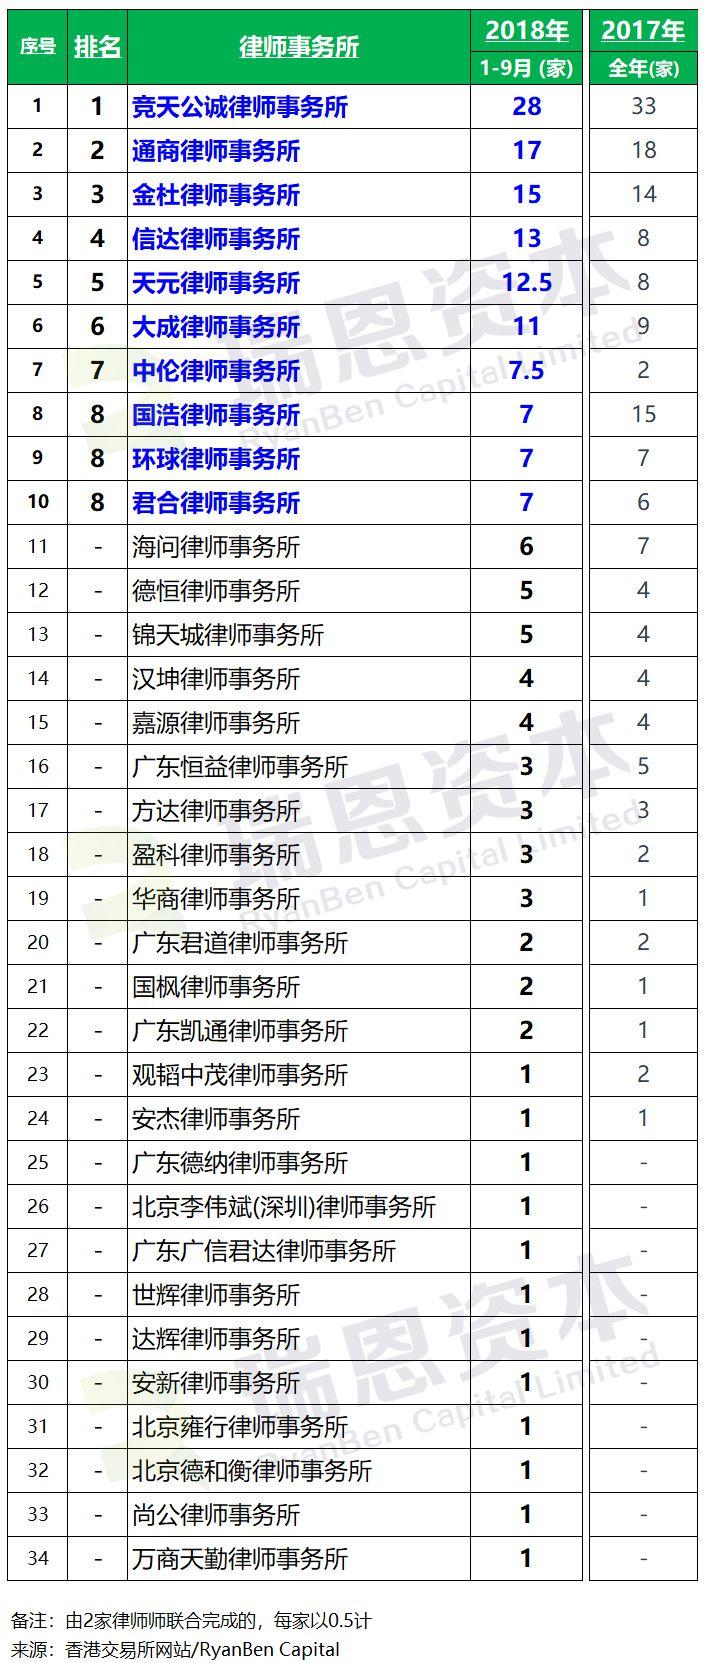 香港IPO上市中介團隊排行榜 (2018年前三季)